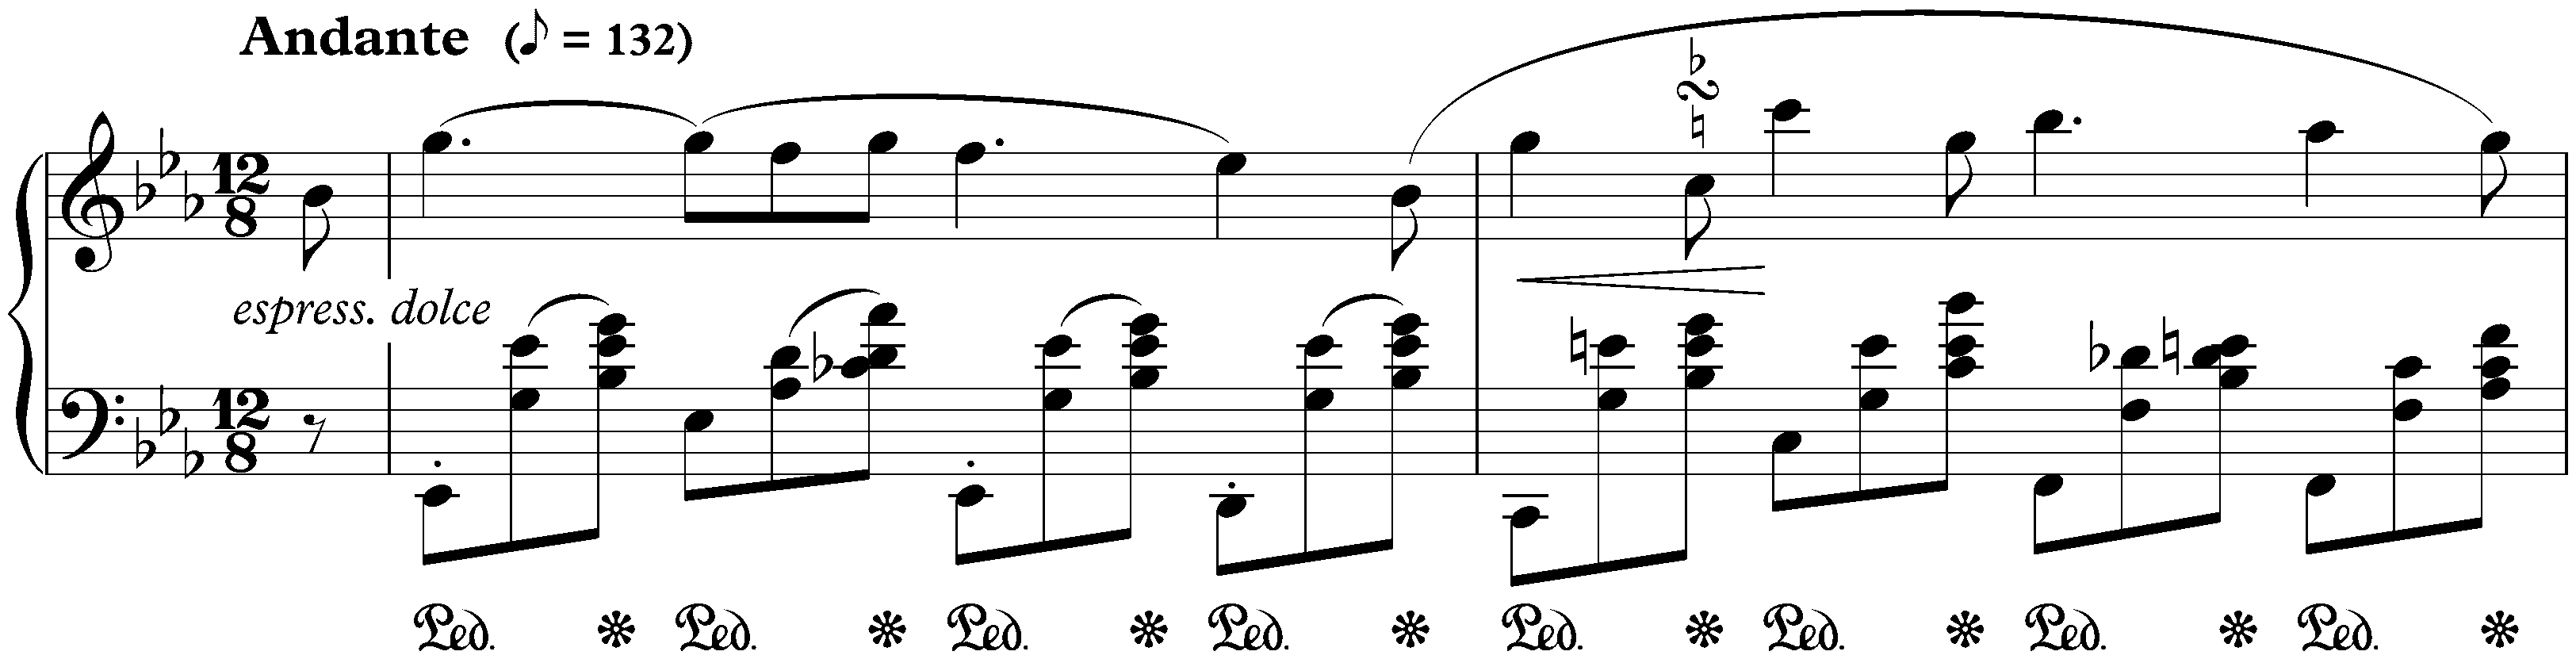 Three Nocturnes, op. 9; 2. E-flat major